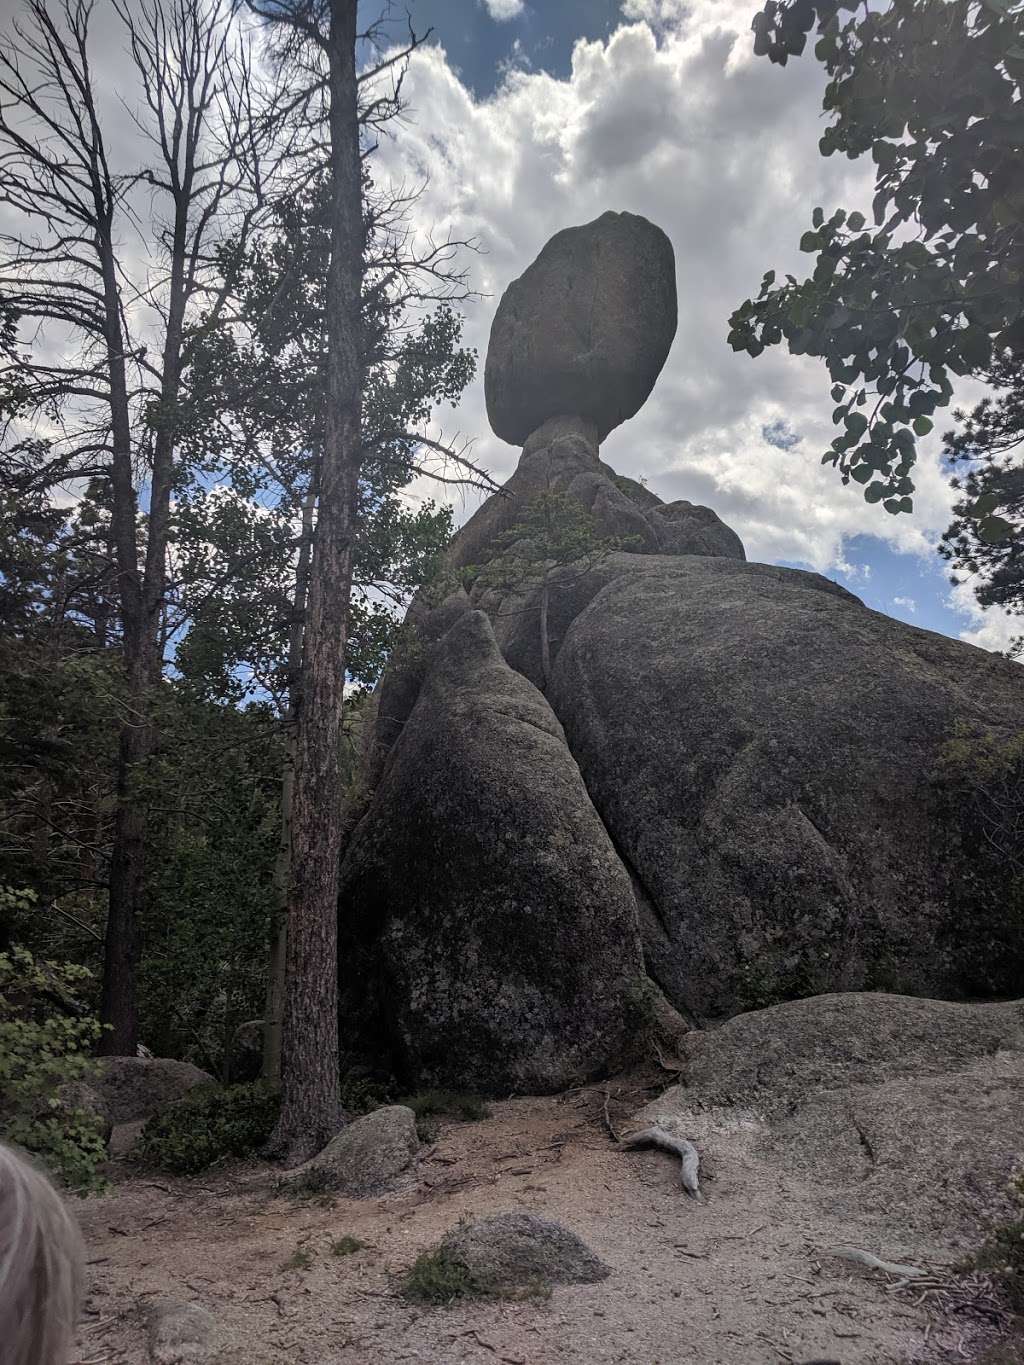 Balanced Rock | Balanced Rock Trail, Estes Park, CO 80517, USA